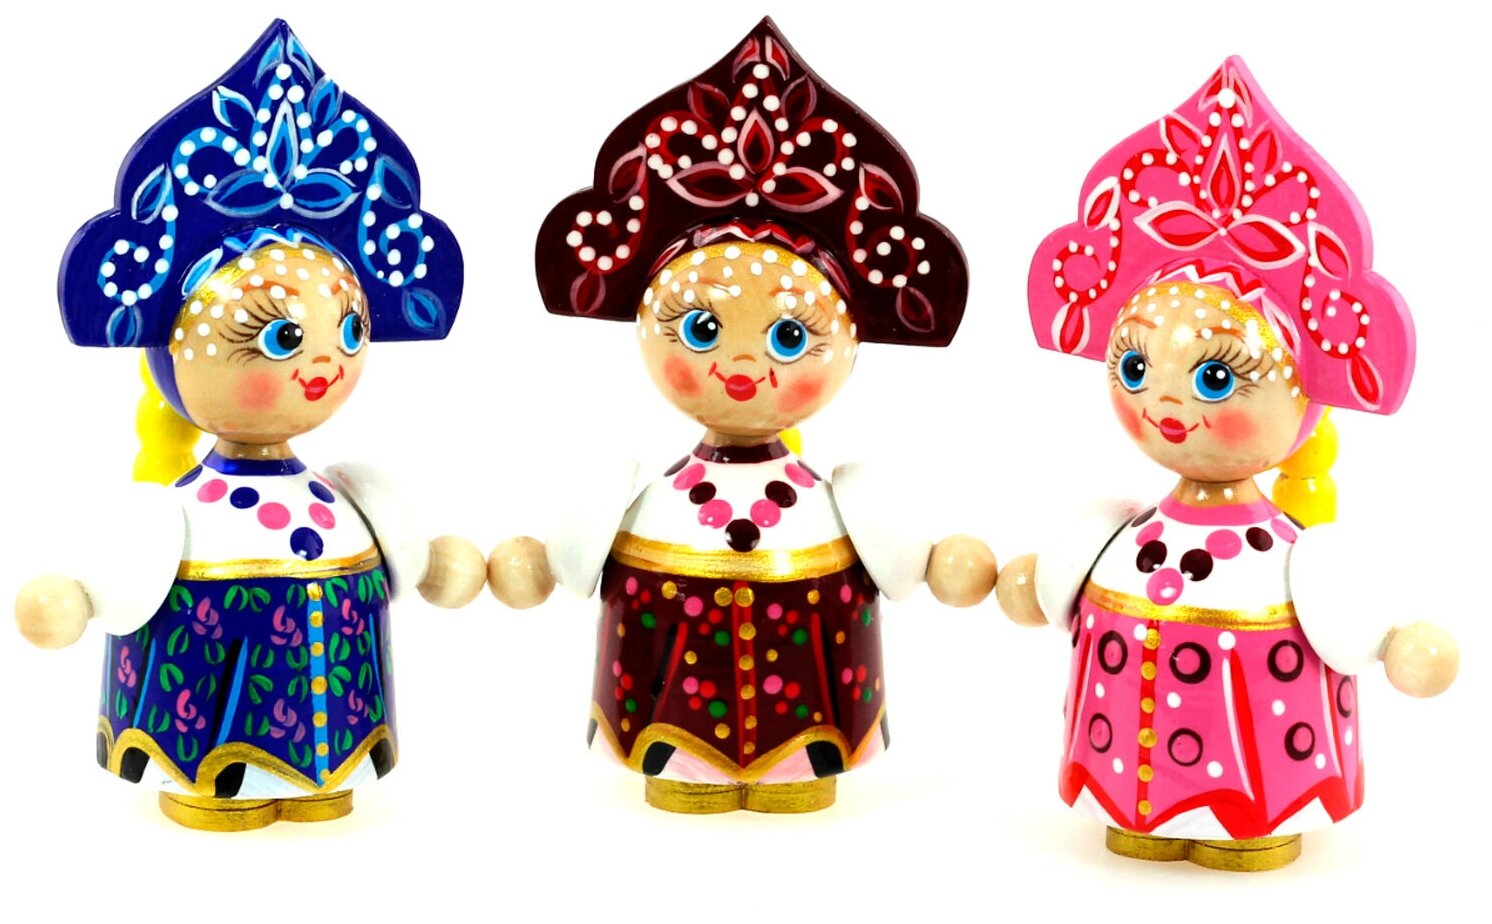 Кукла авторская деревянная Дарья набор 3 шт / русские сувениры из дерева / Azhna